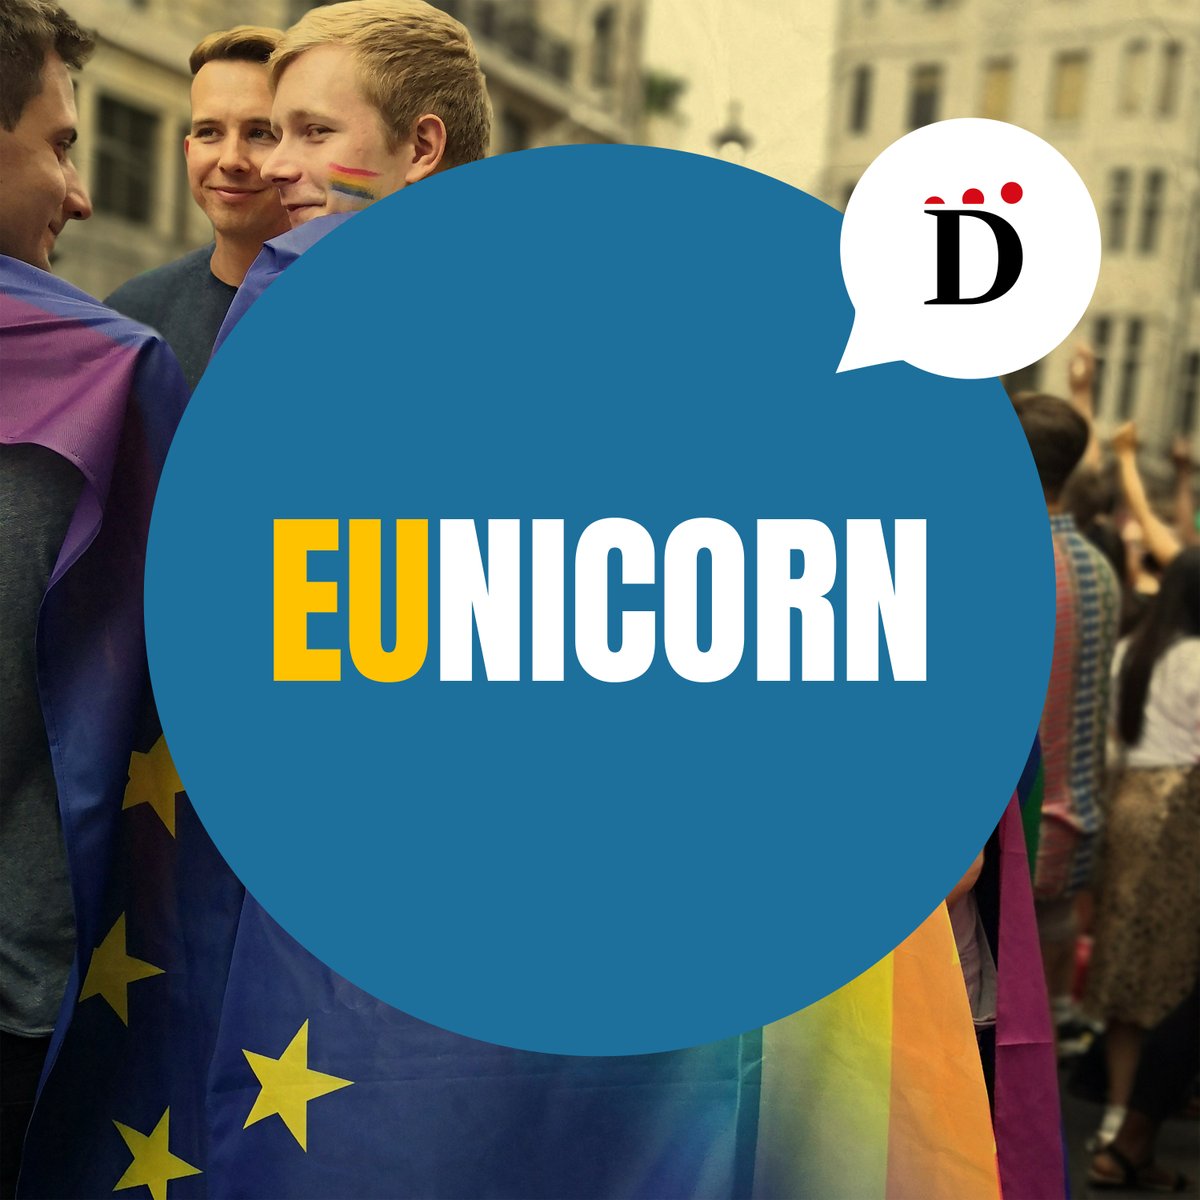 “Non abbiamo altra scelta che occupare Bruxelles”: è la promessa - o la minaccia - di Viktor #Orbán. Questa puntata del nostro #podcast #EUnicorn è dedicata a lui: il cattivo d’Europa 👉 bit.ly/3VNMfrR